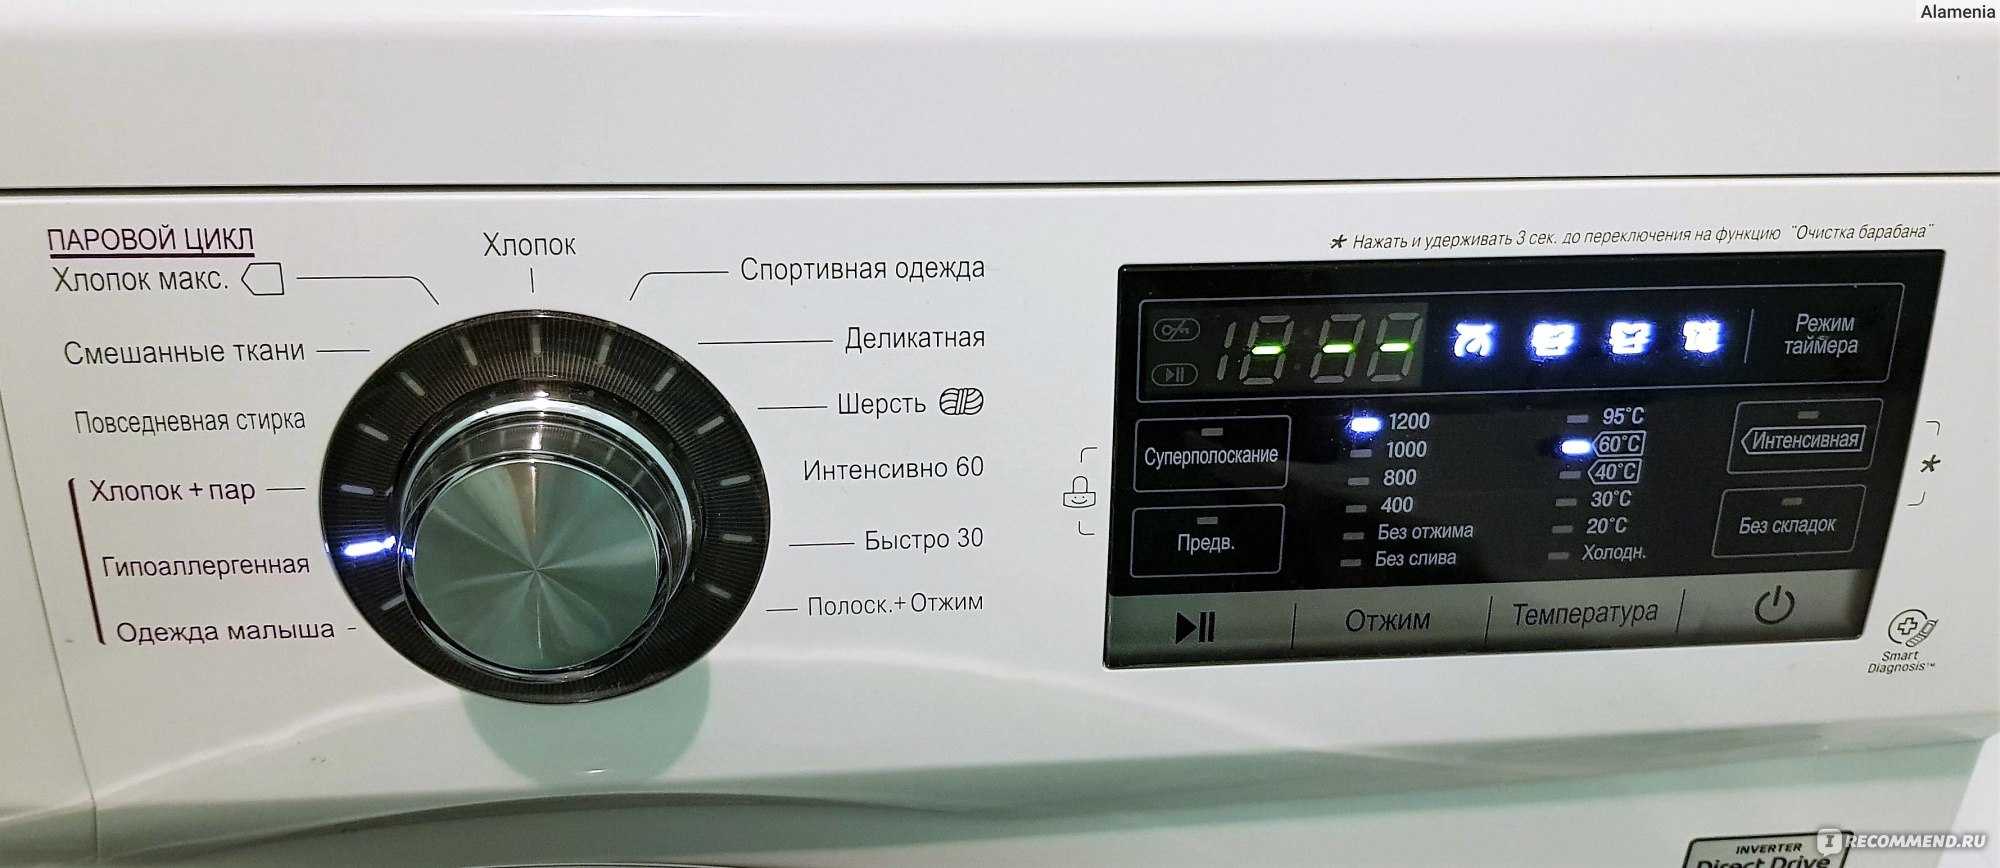 Ручная стирка в автоматической стиральной машине: что это такое? мифы и реальность +видео